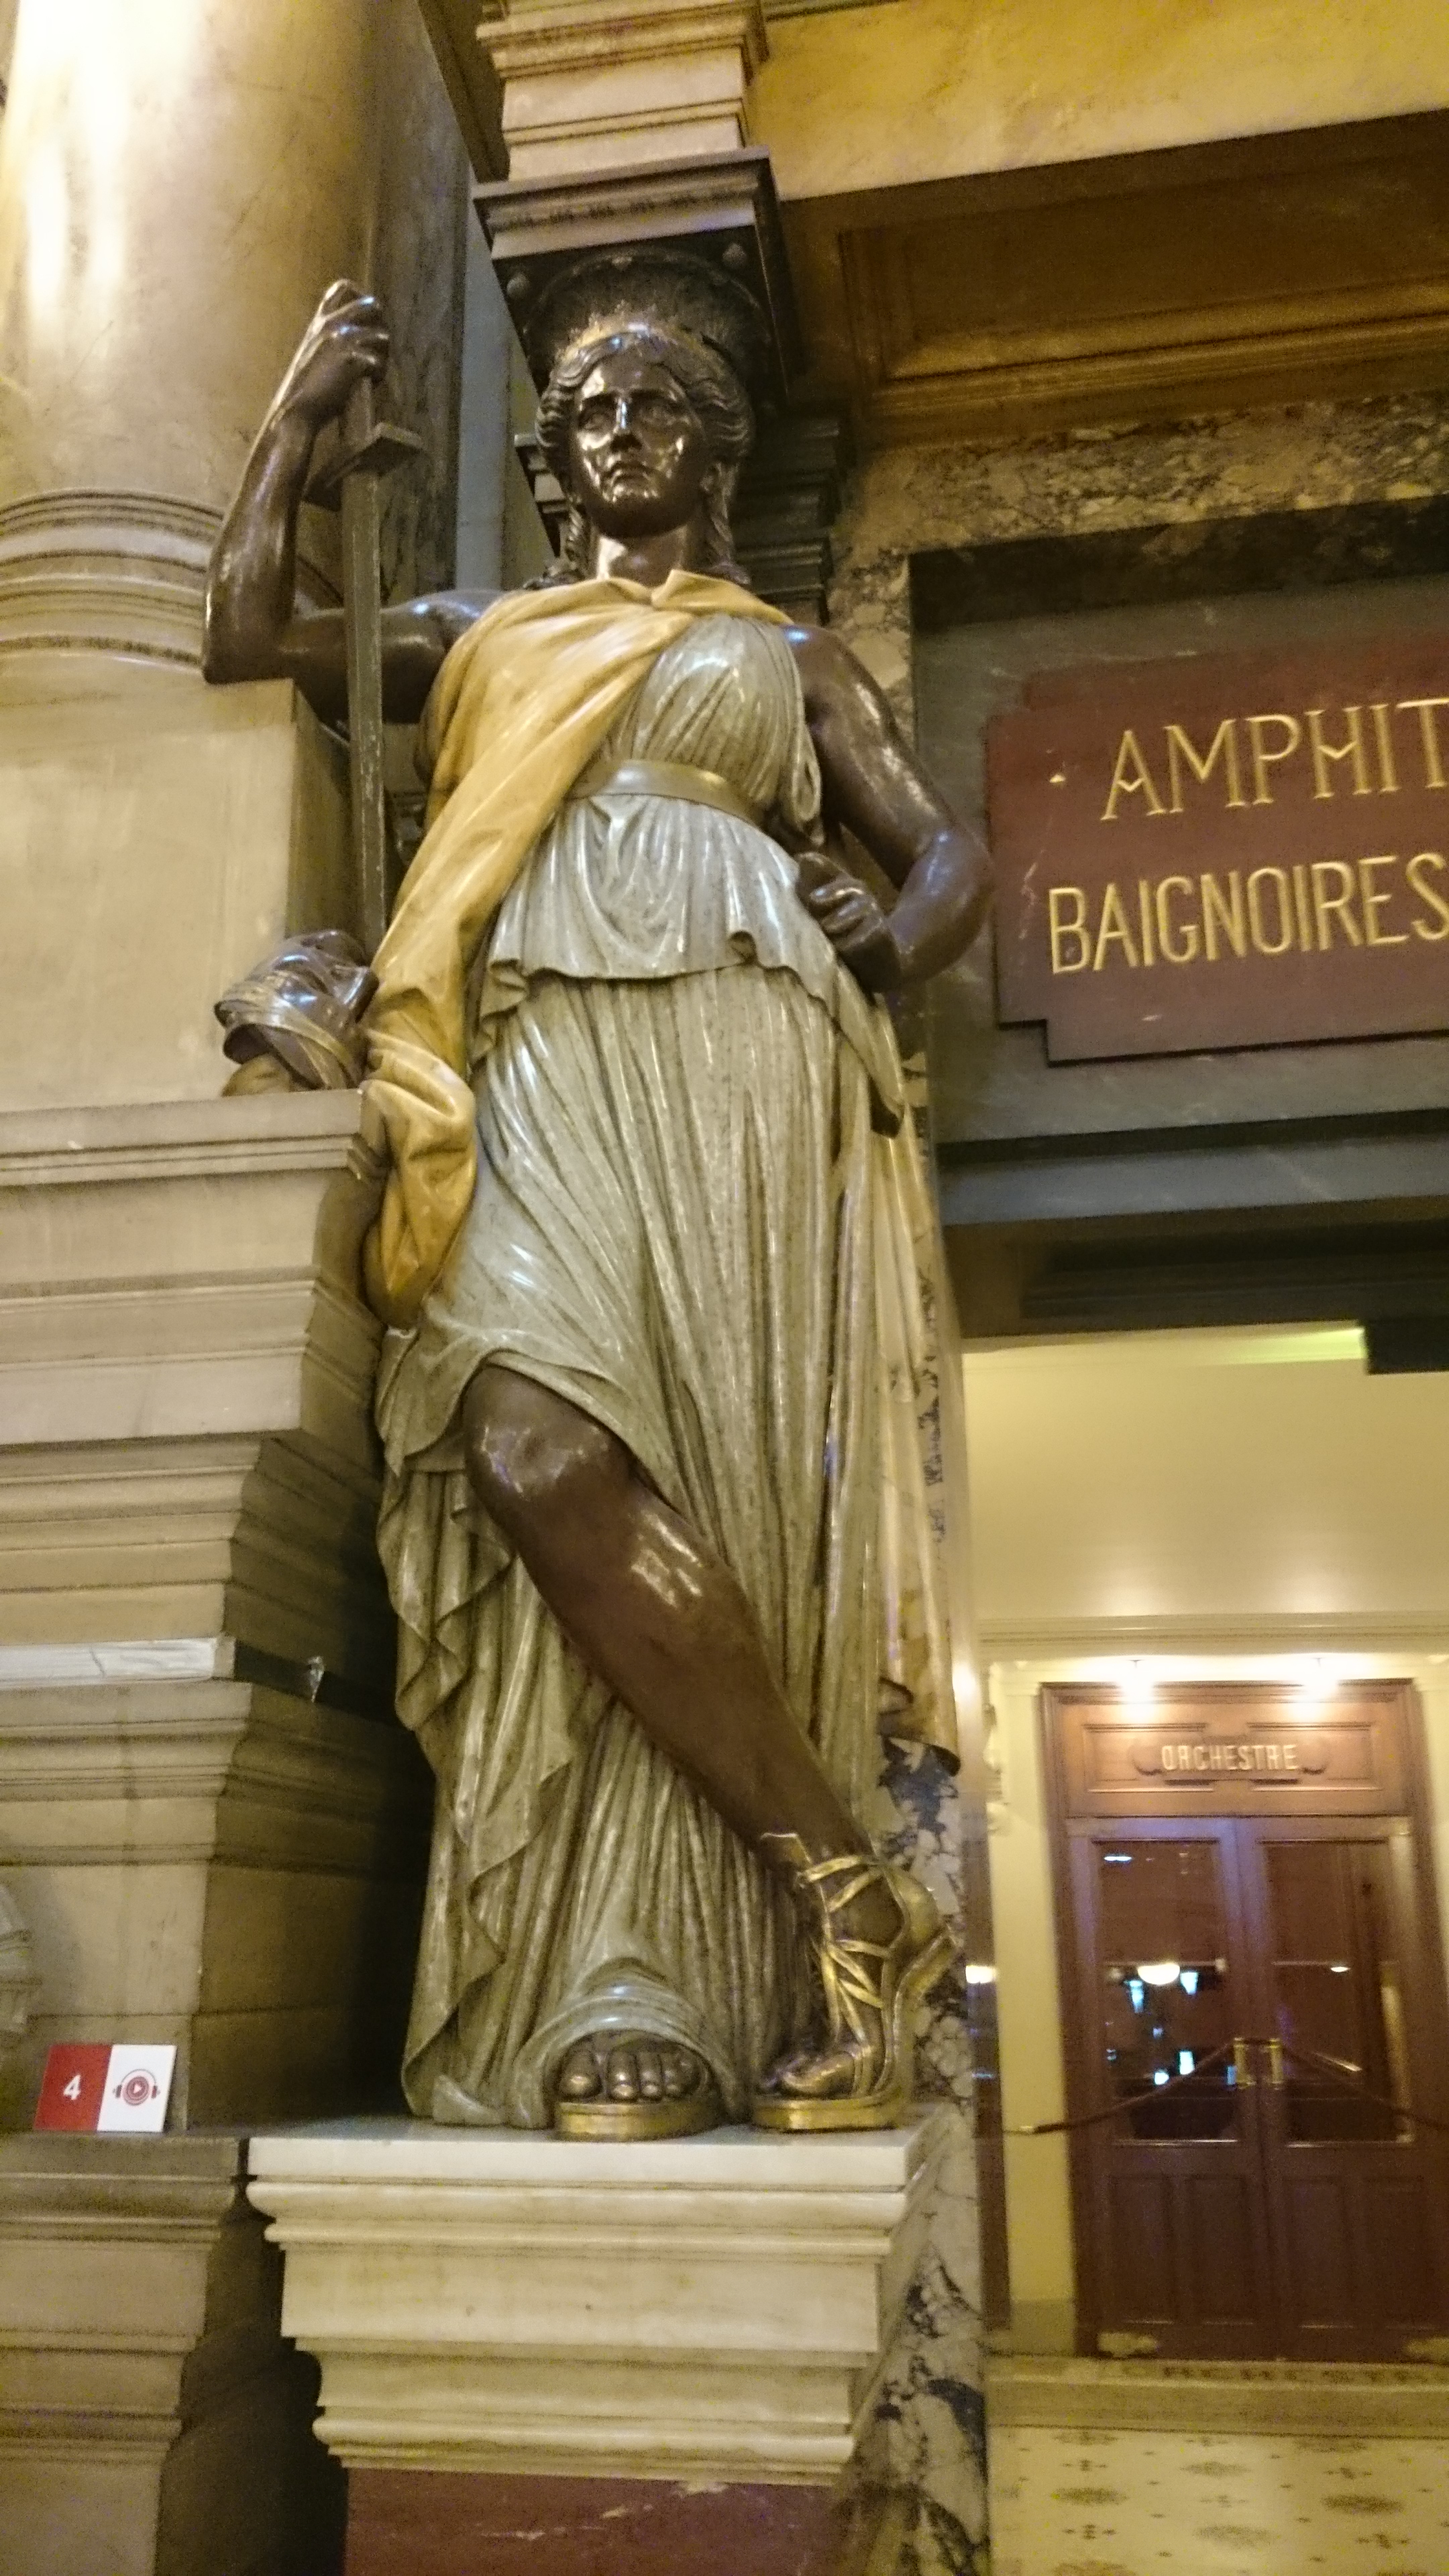 dsc 1017 - Una visita a la Opera de Paris (Palais Garnier)